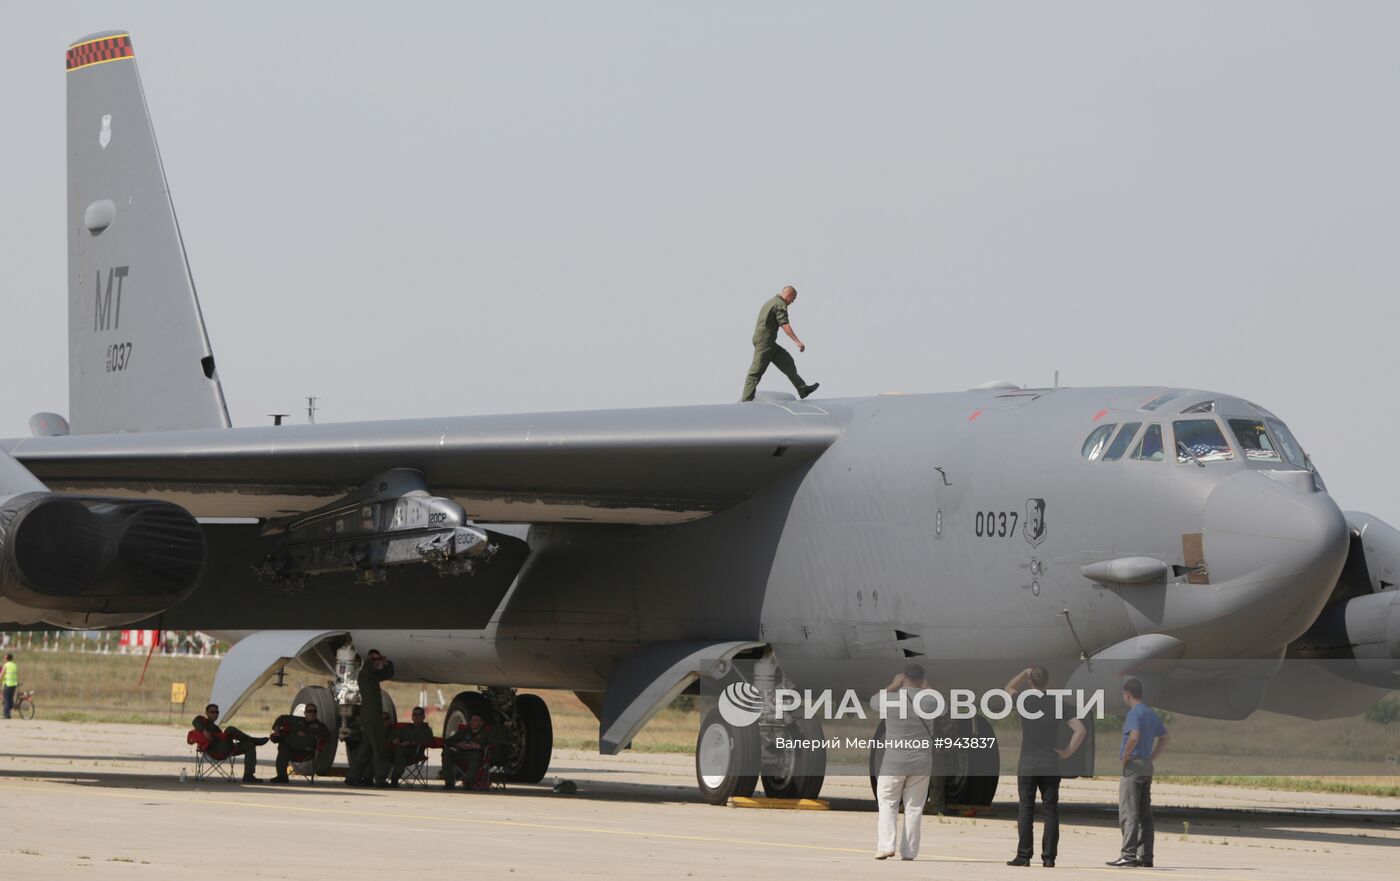 Прилет бомбардировщика Б-52 на авиасалон "МАКС-2011"